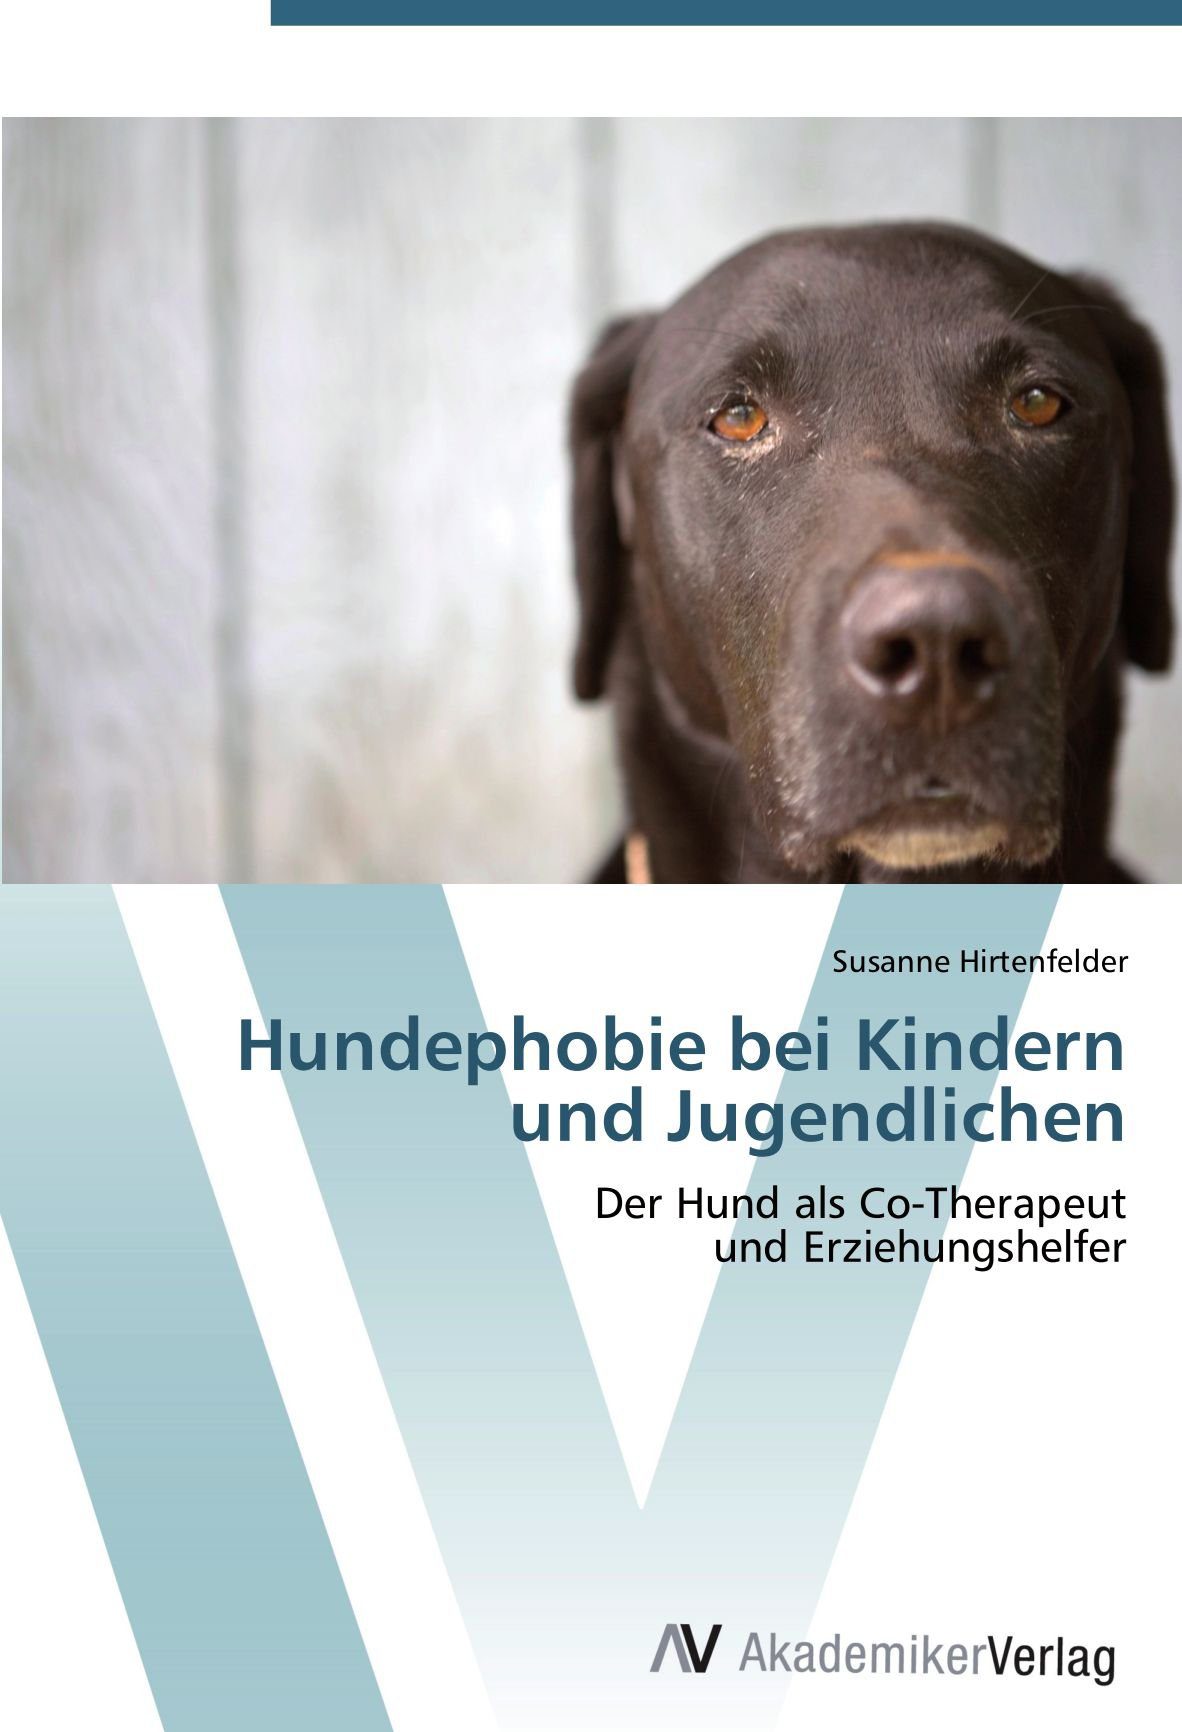 Buch: Hundephobie bei Kindern und Jugendlichen: Der Hund als Co-Therapeut und Erziehungshelfer (Amazon)